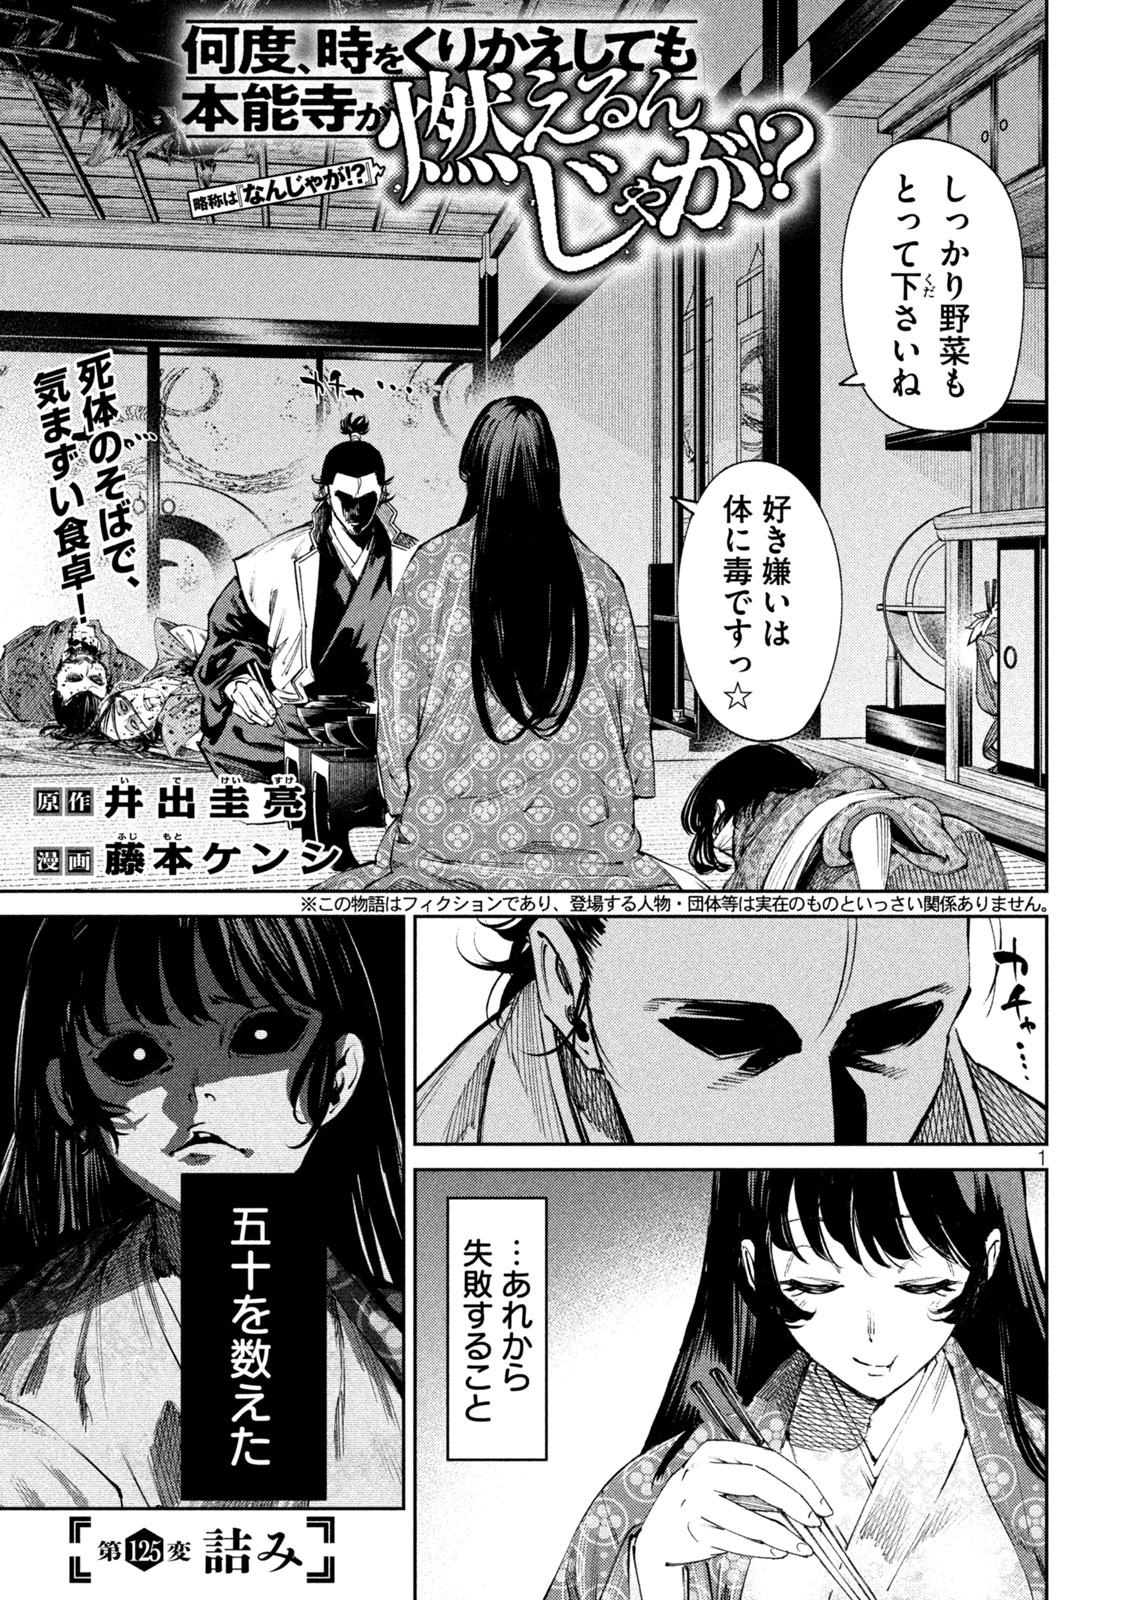 Nando toki o kurikaeshitemo Honnouji ga moerunjaga! - Chapter 125 - Page 1